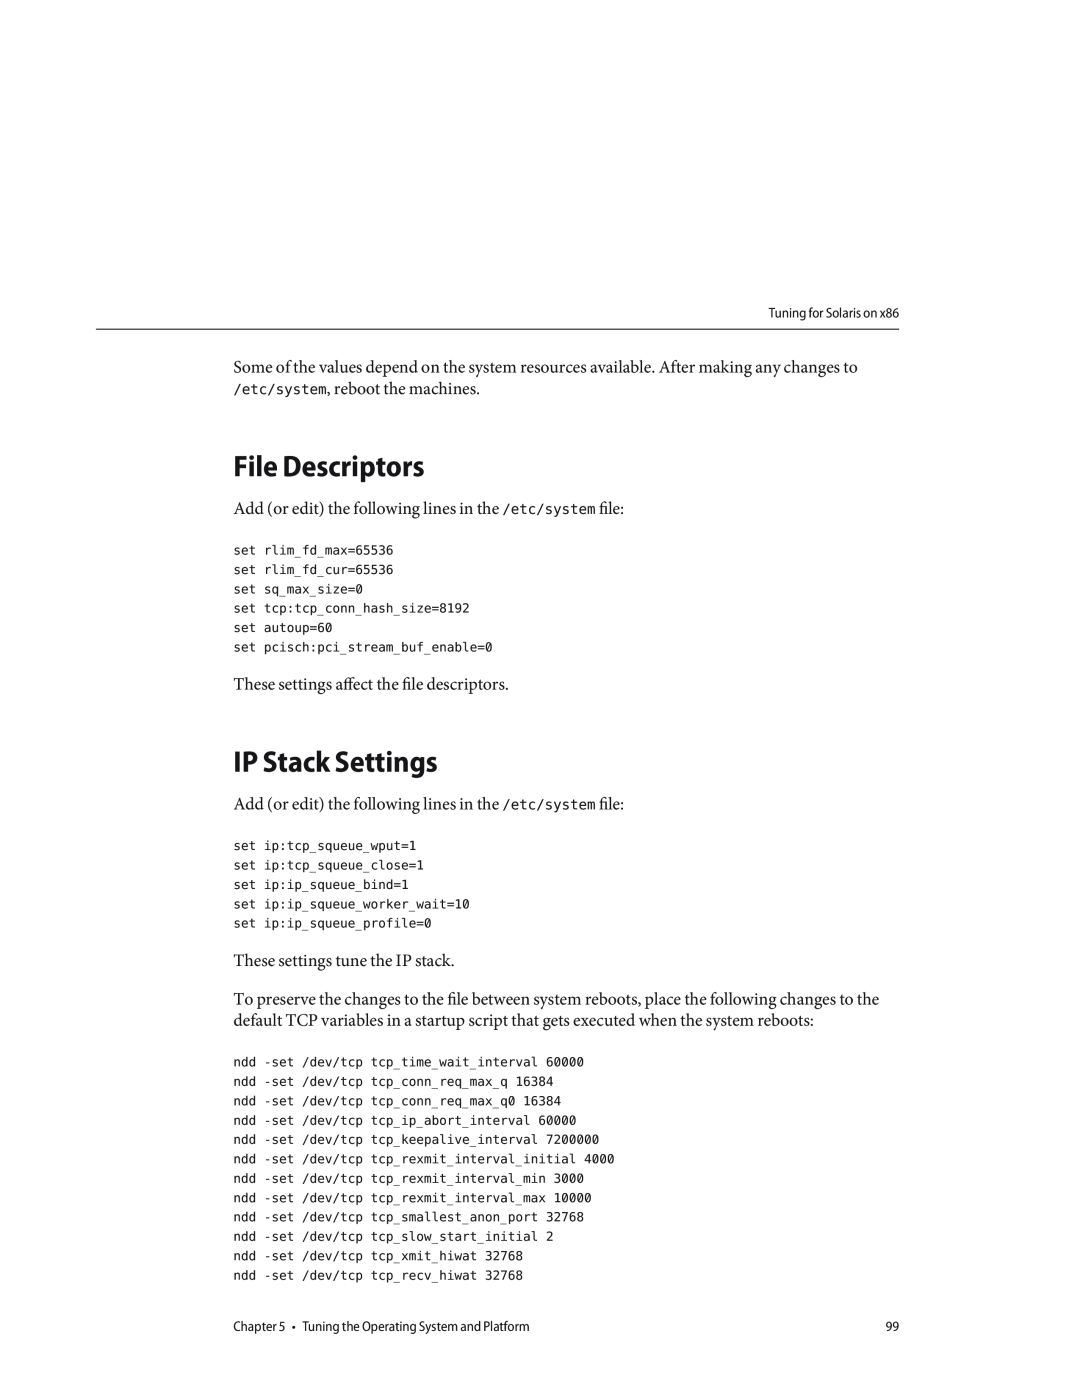 Sun Microsystems 820434310 manual File Descriptors, IP Stack Settings 